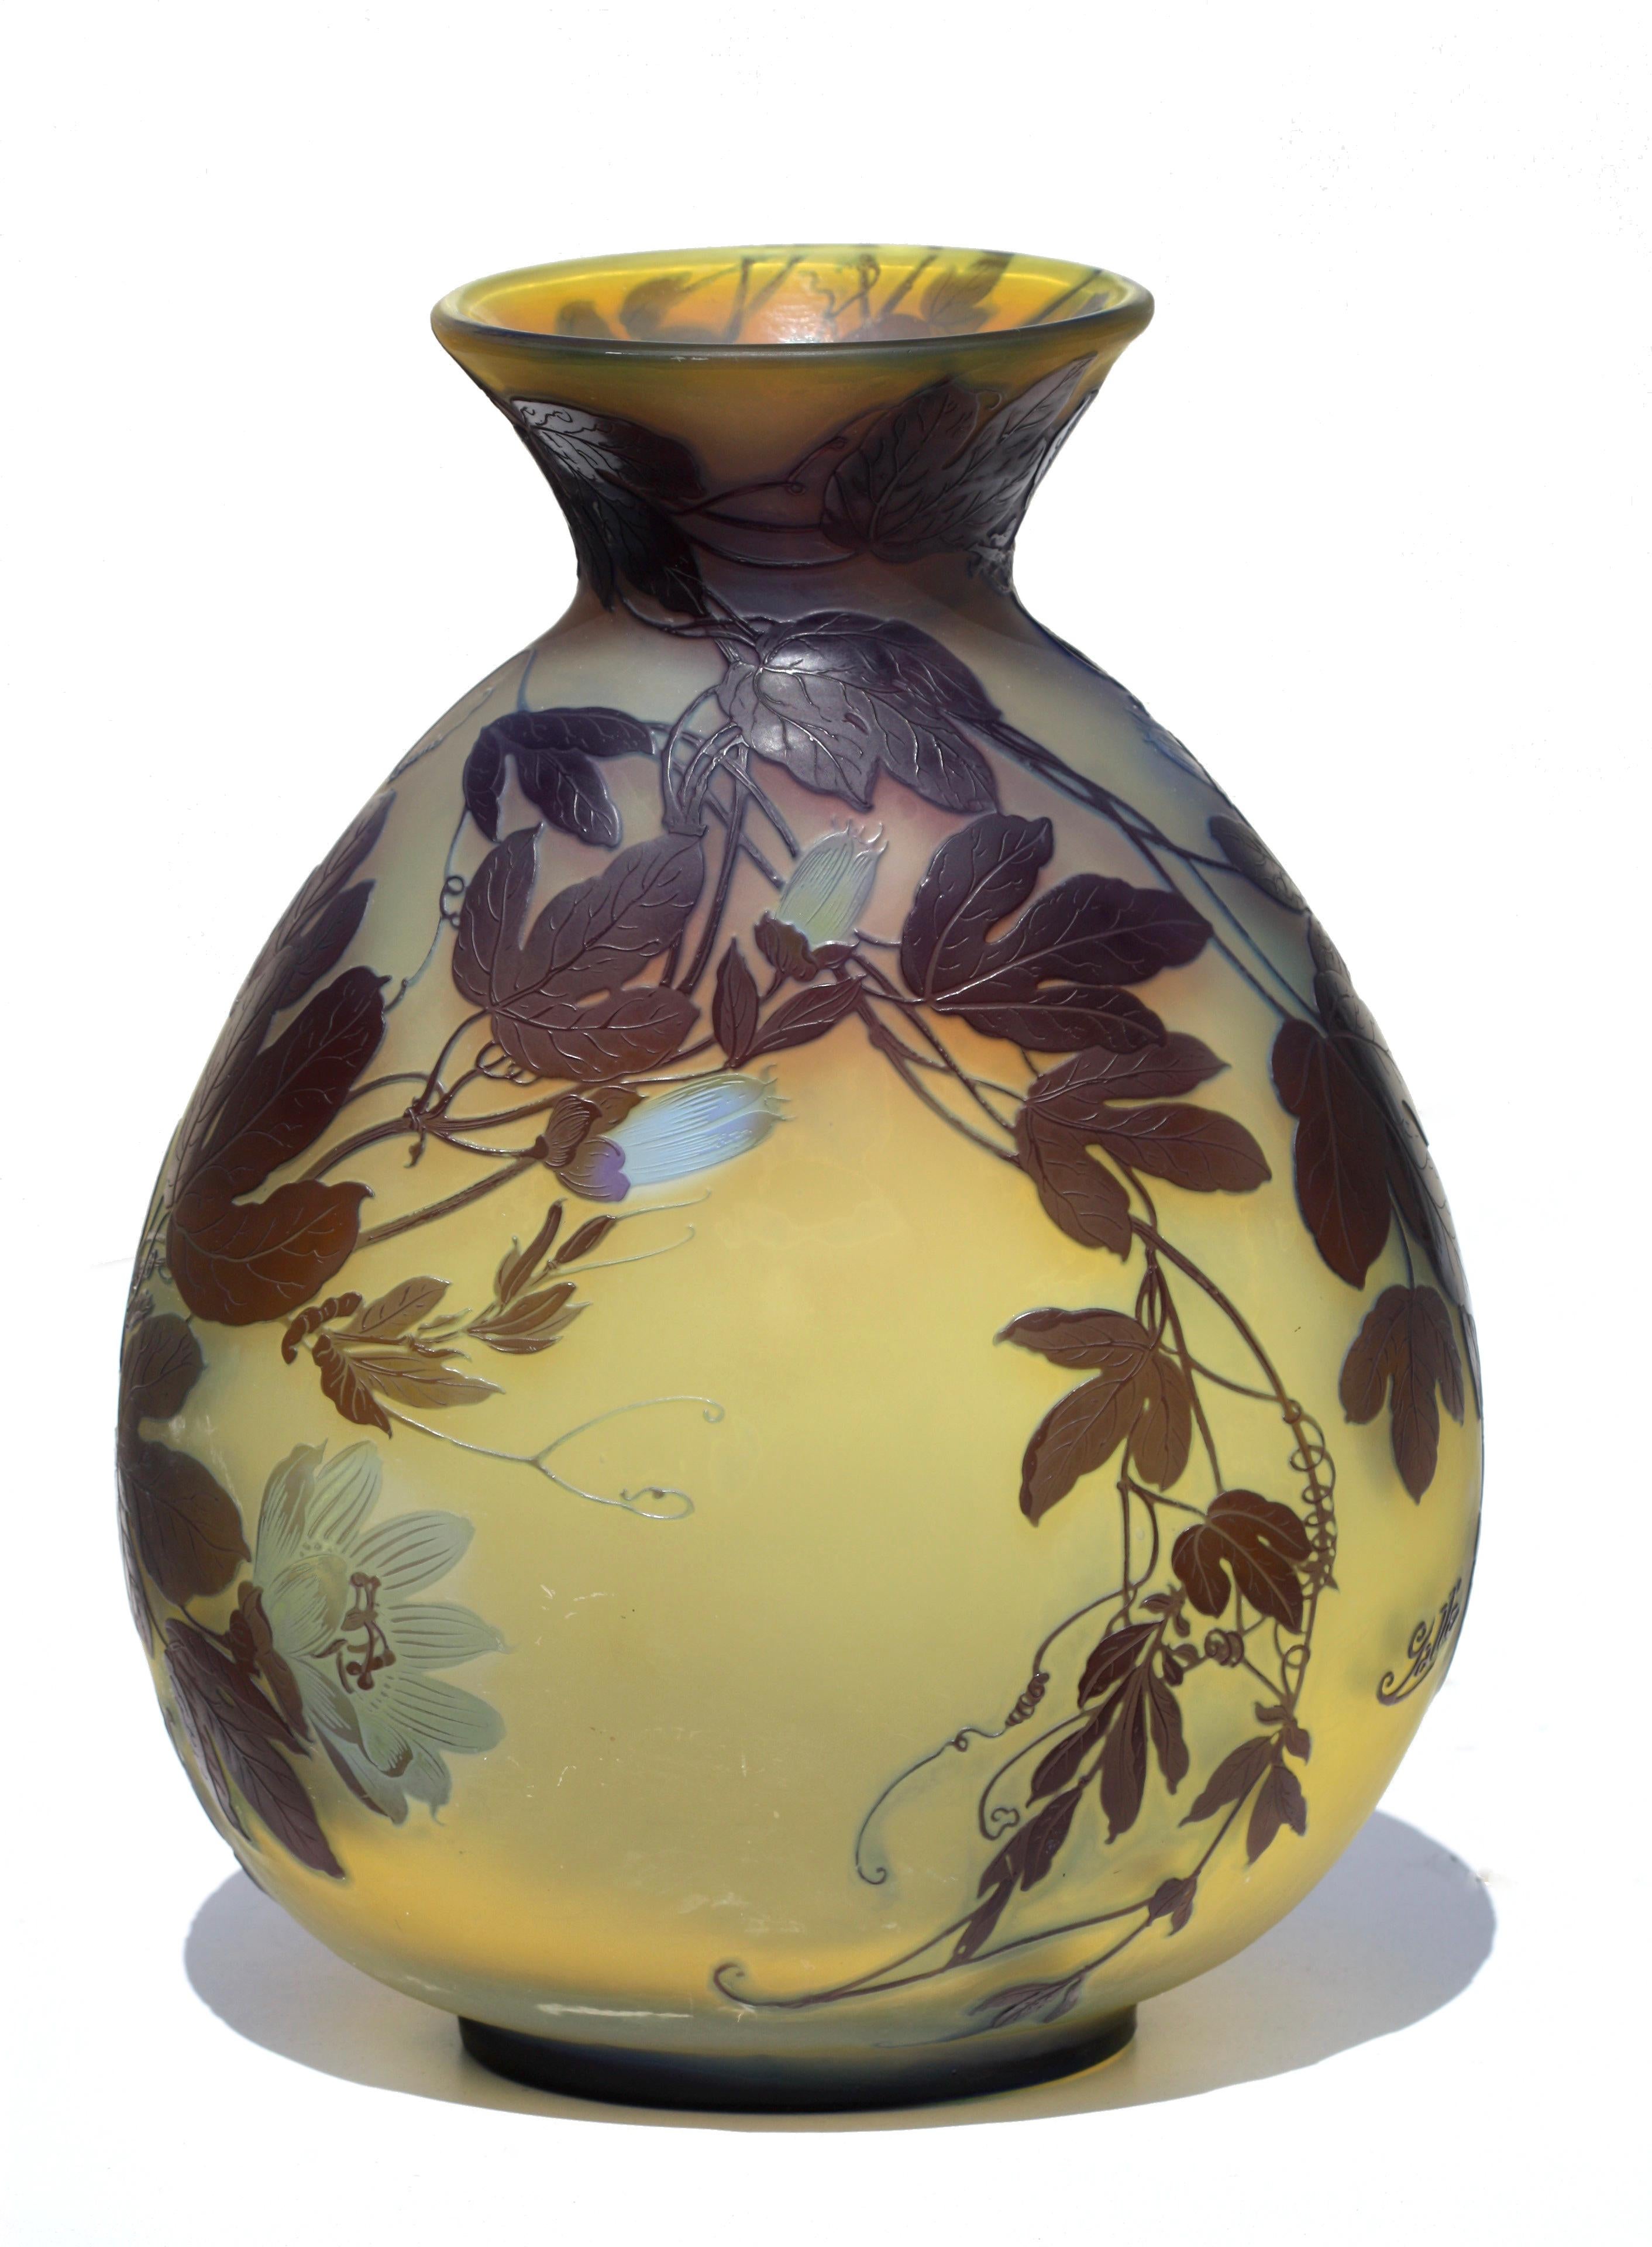 Émile Gallé
Un impressionnant vase en verre camée de Gallé
vers 1900
verre incolore avec une couche d'ambre dégradée recouverte de brun et de vert pâle, gravé et taillé avec des fleurs pendantes
marque en camée 